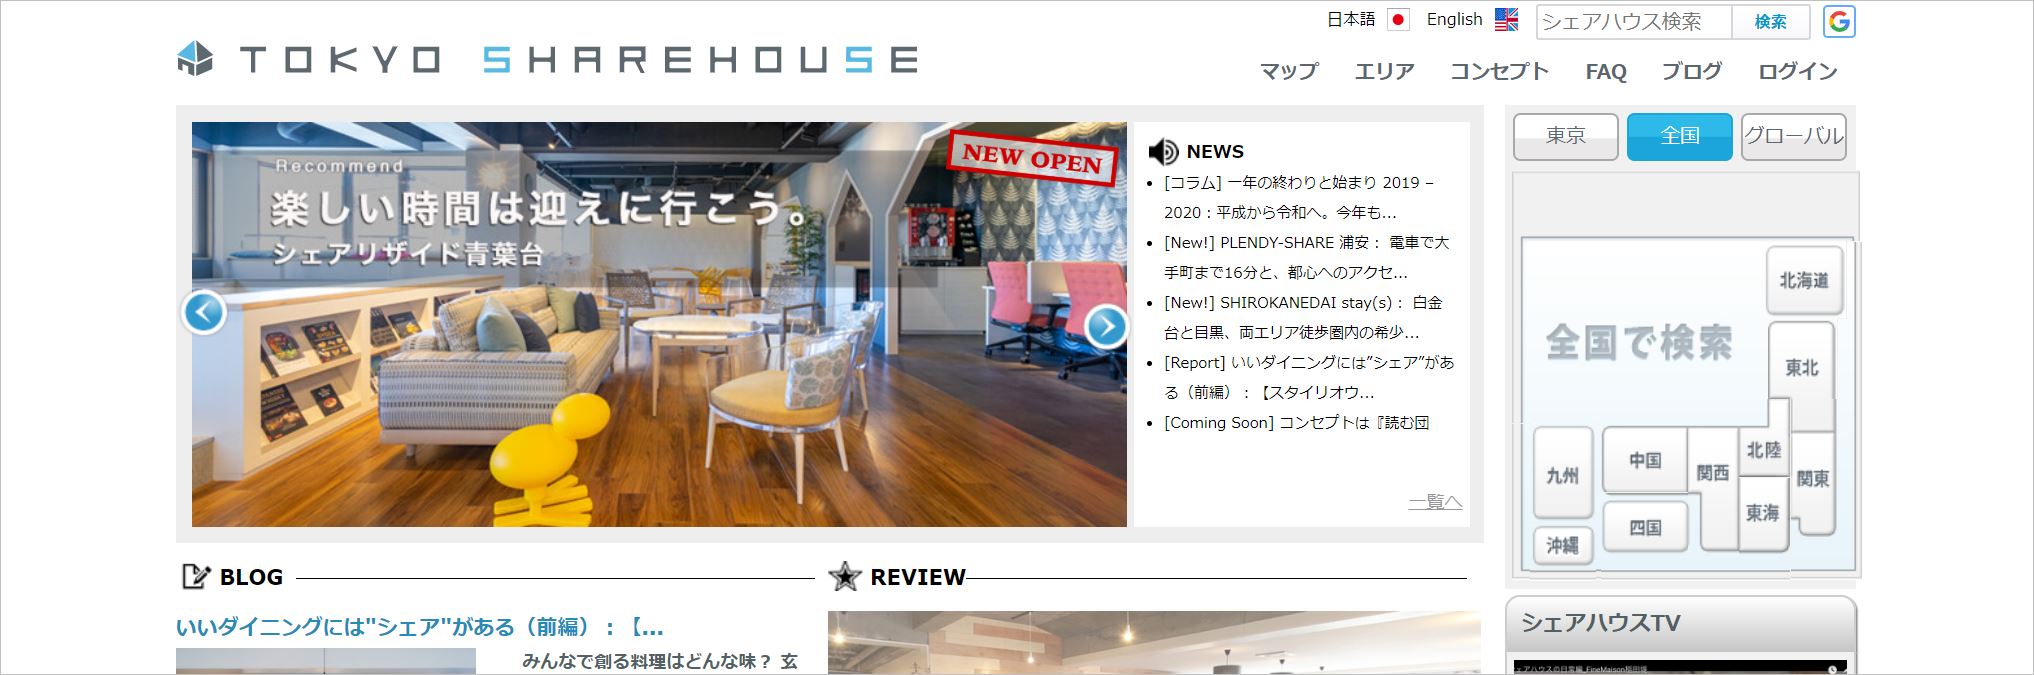 東京シェアハウスのトップ画面